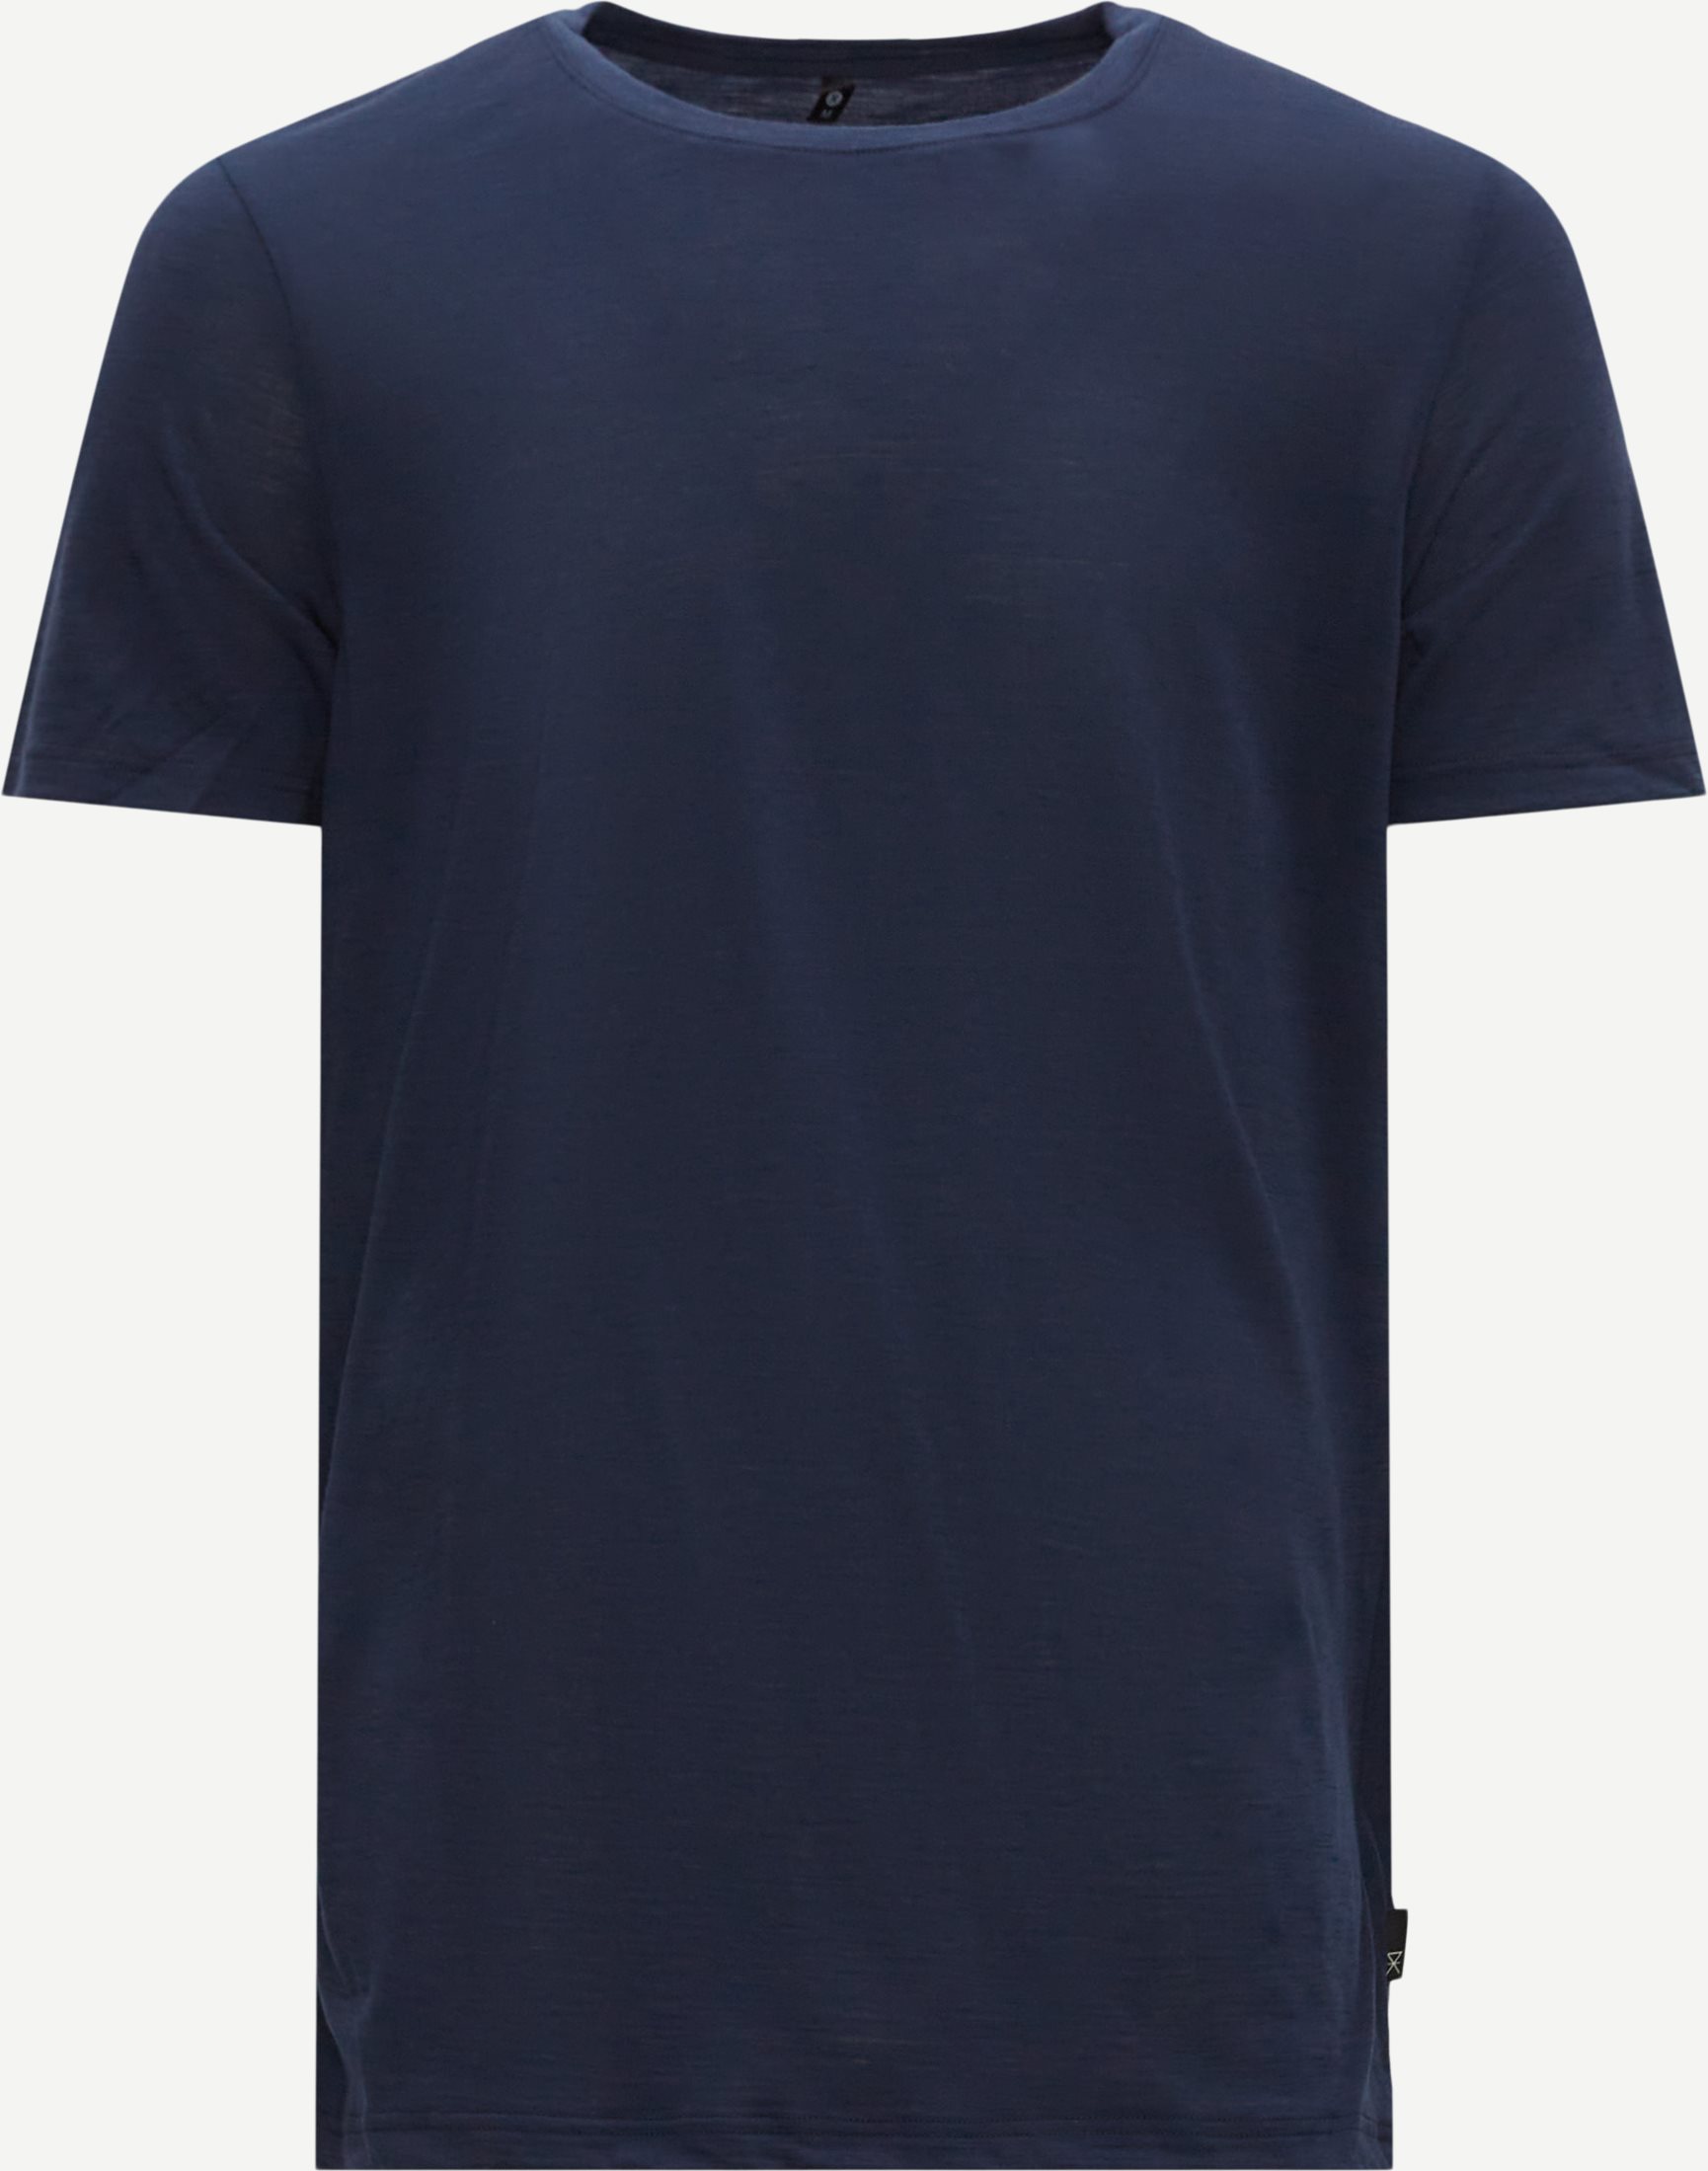 JBS of Denmark T-shirts 1150-2 WOOL T-SHIRT Blå